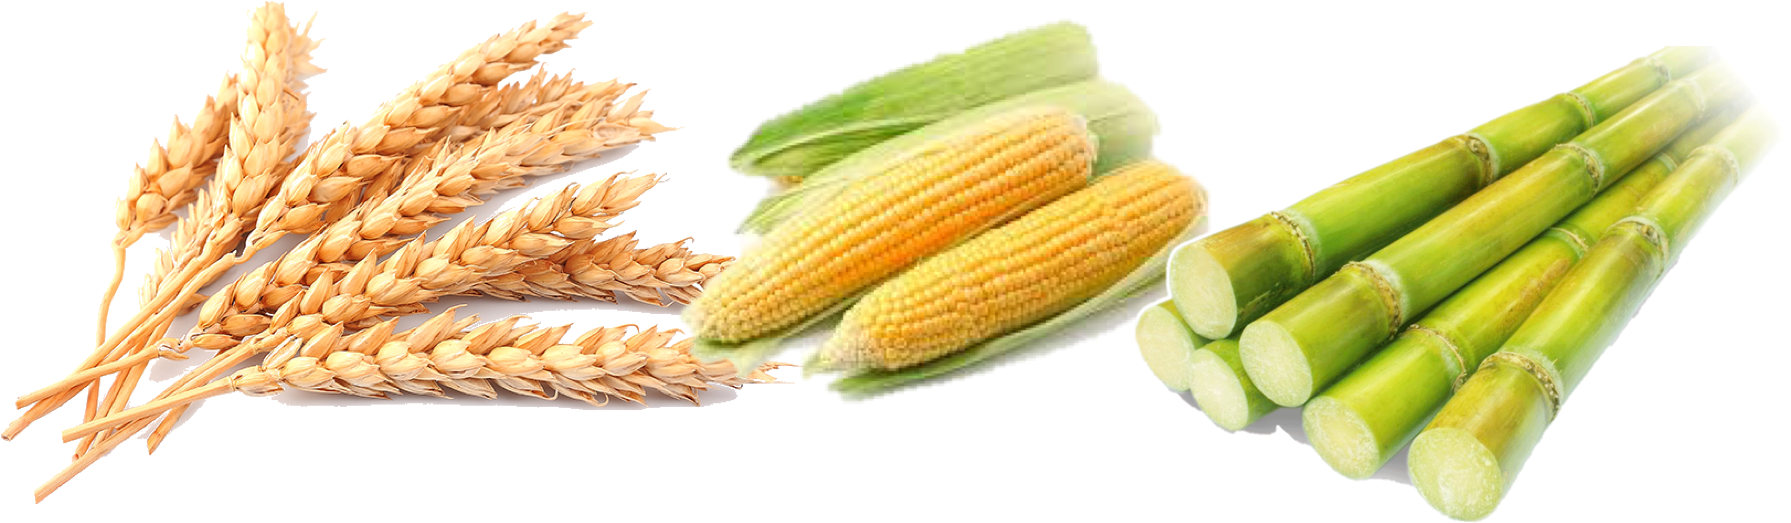 Wheat Corn Rice Barley Millet Flat Design Vector - Wheat Maize (1833x576)